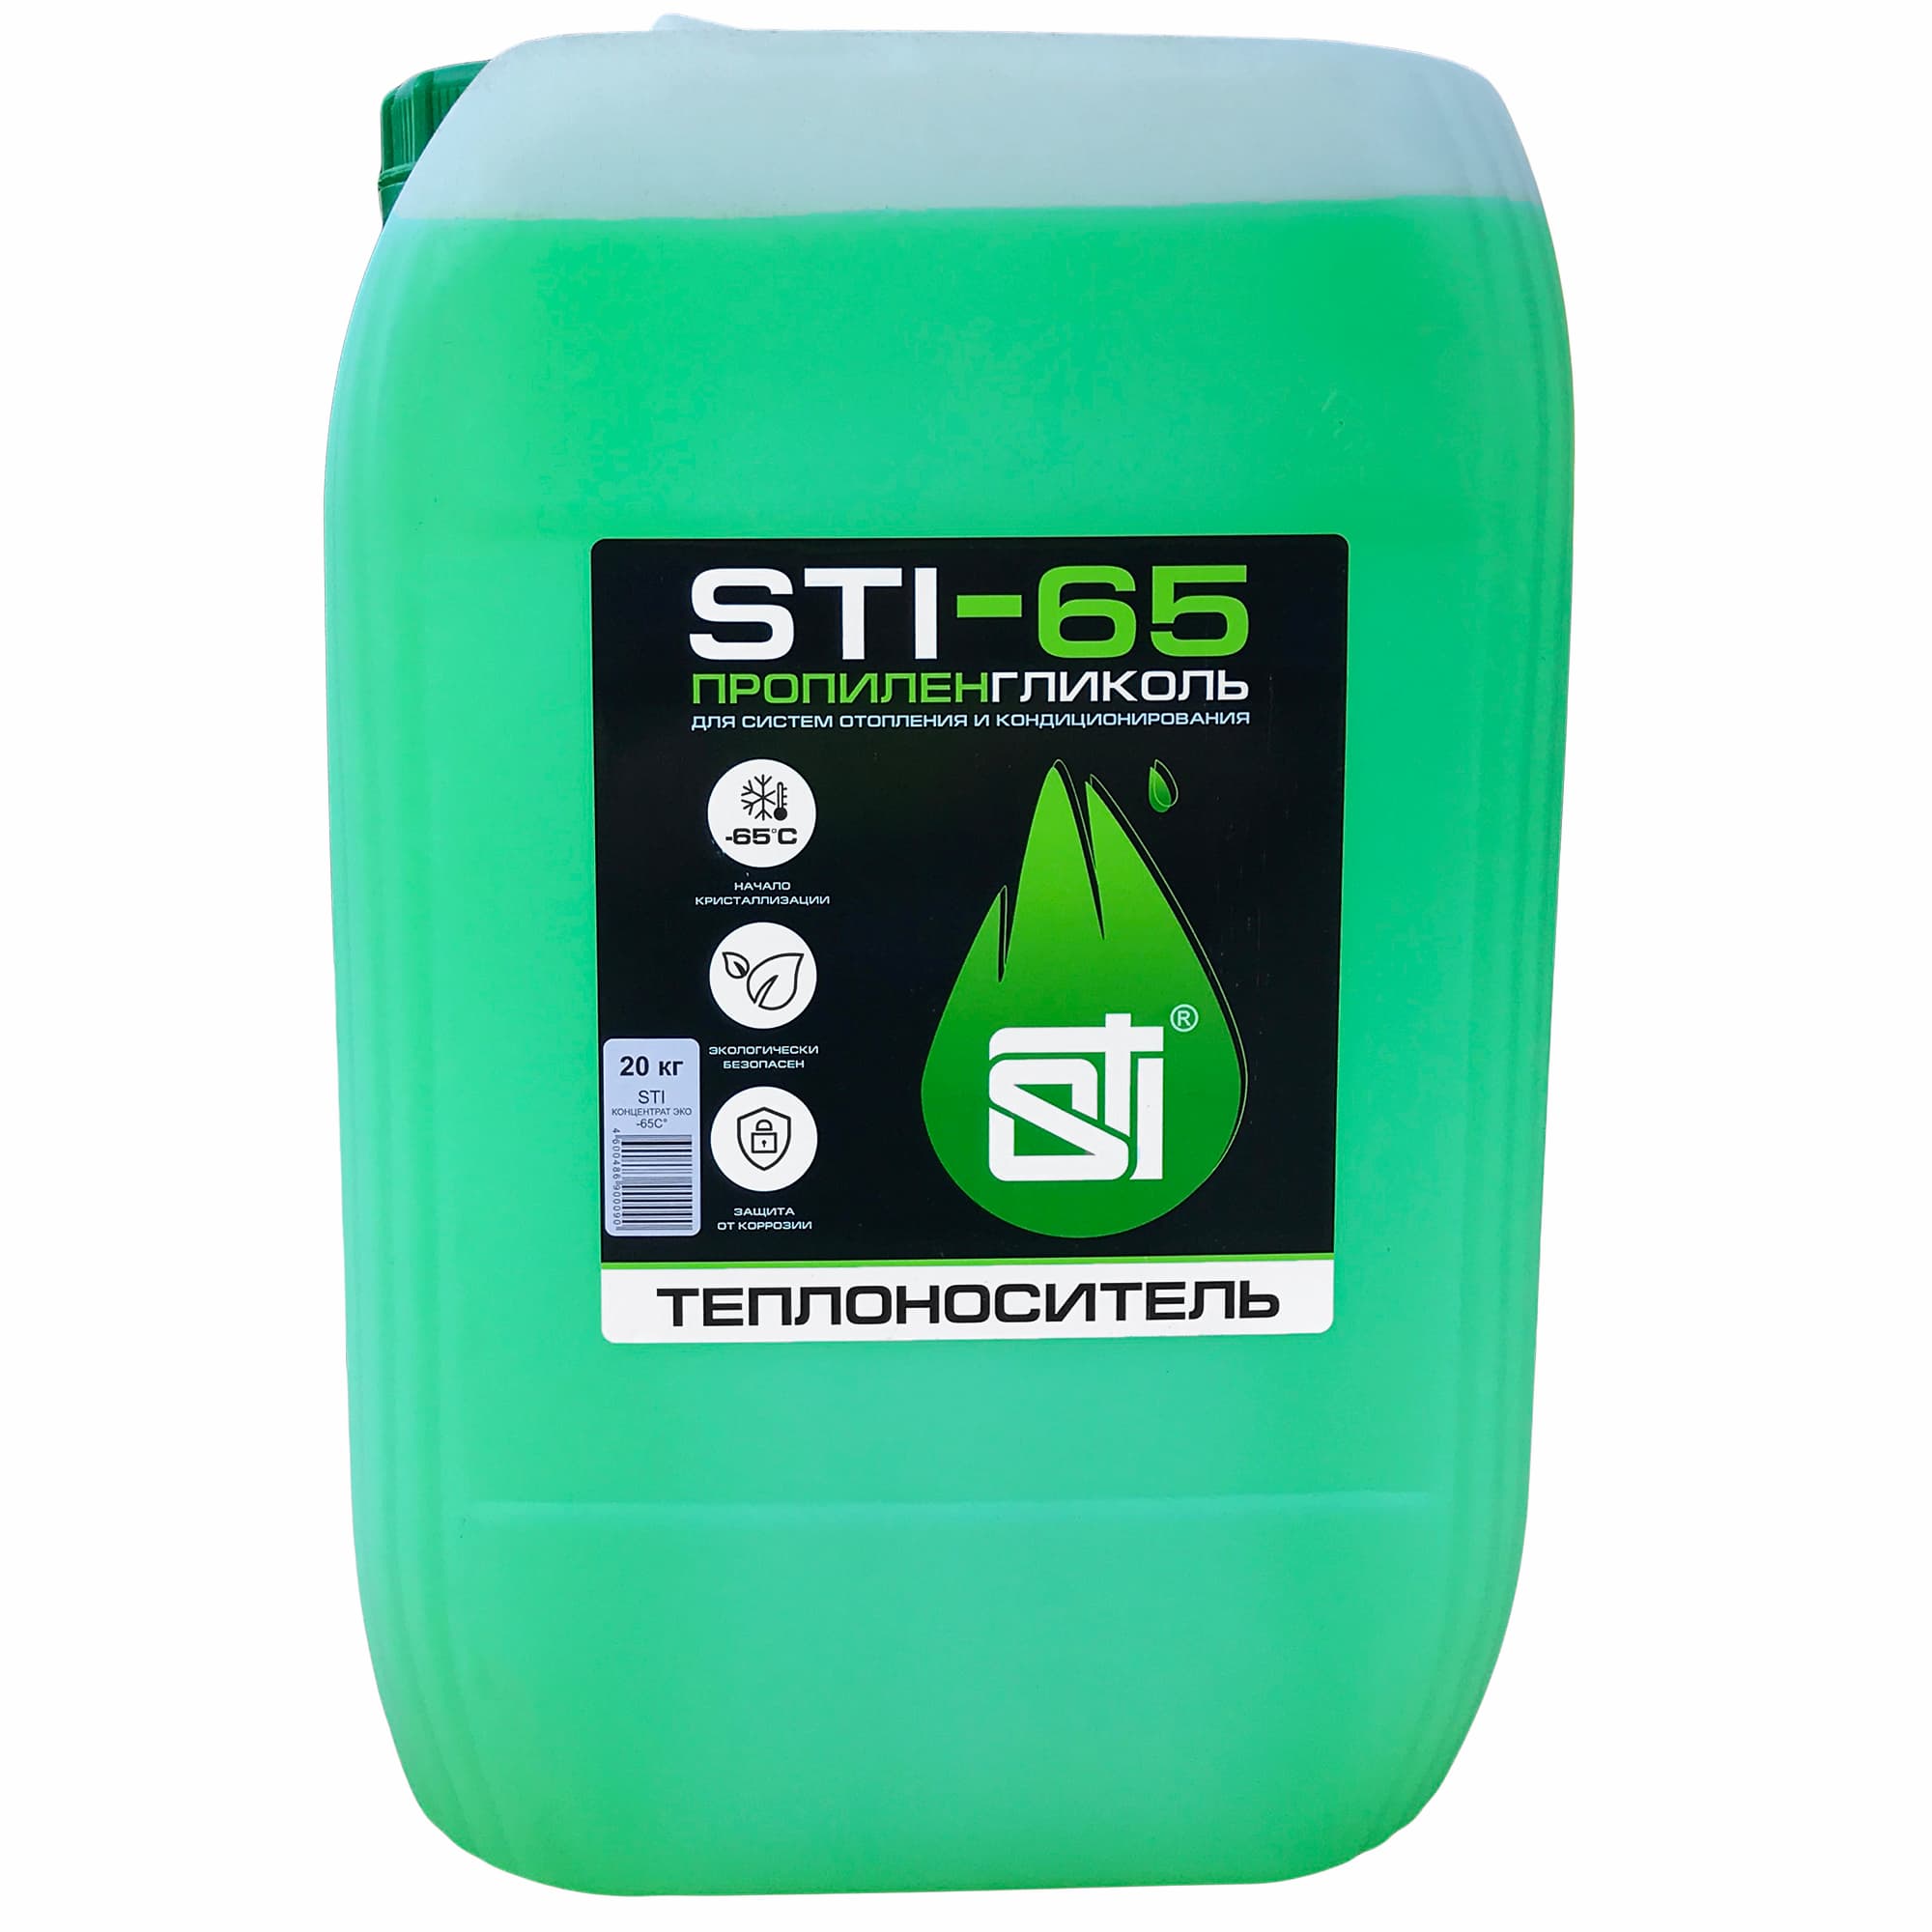 Теплоноситель (антифриз) STI пропиленгликоль (-65°C) 20 кг.